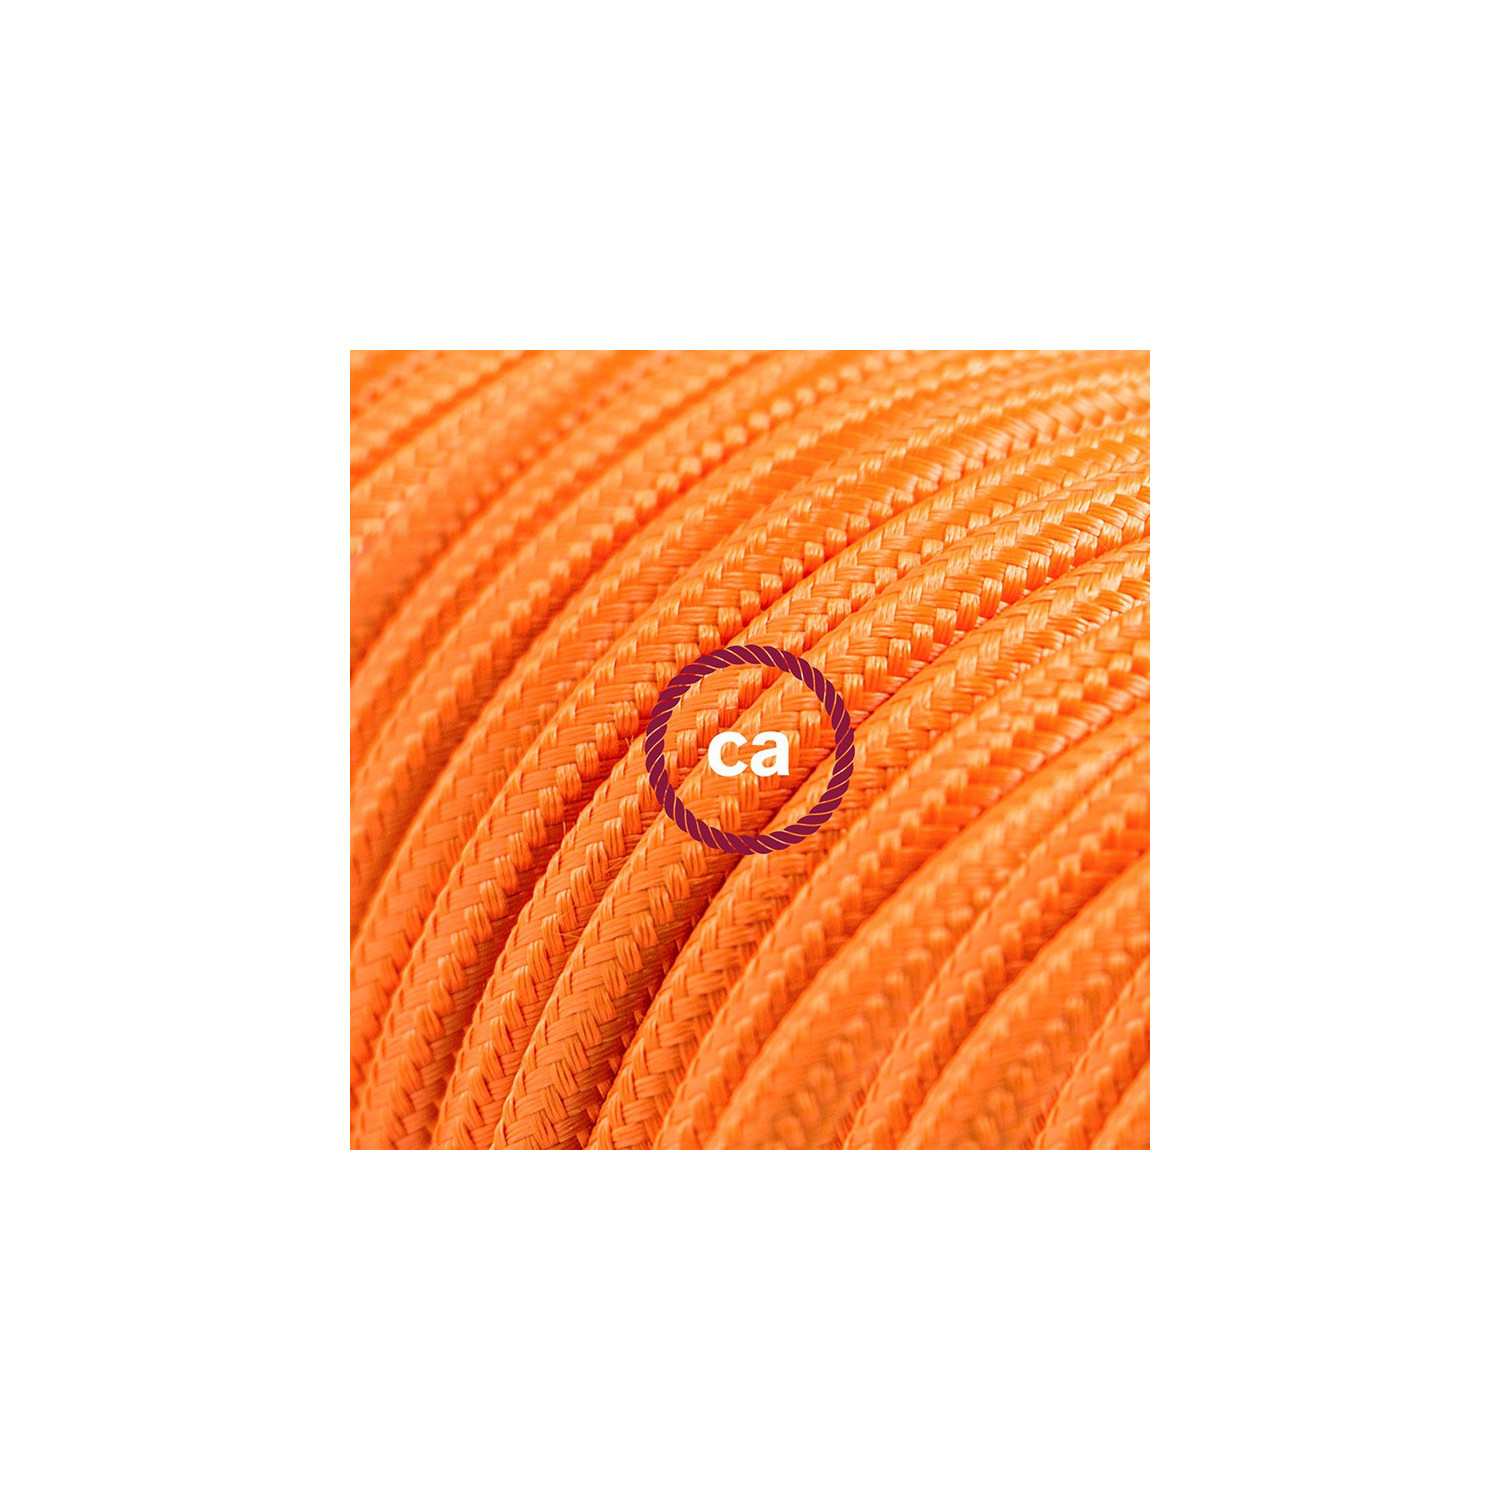 Prolunga elettrica con cavo tessile RM15 Effetto Seta Arancione 2P 10A Made in Italy.